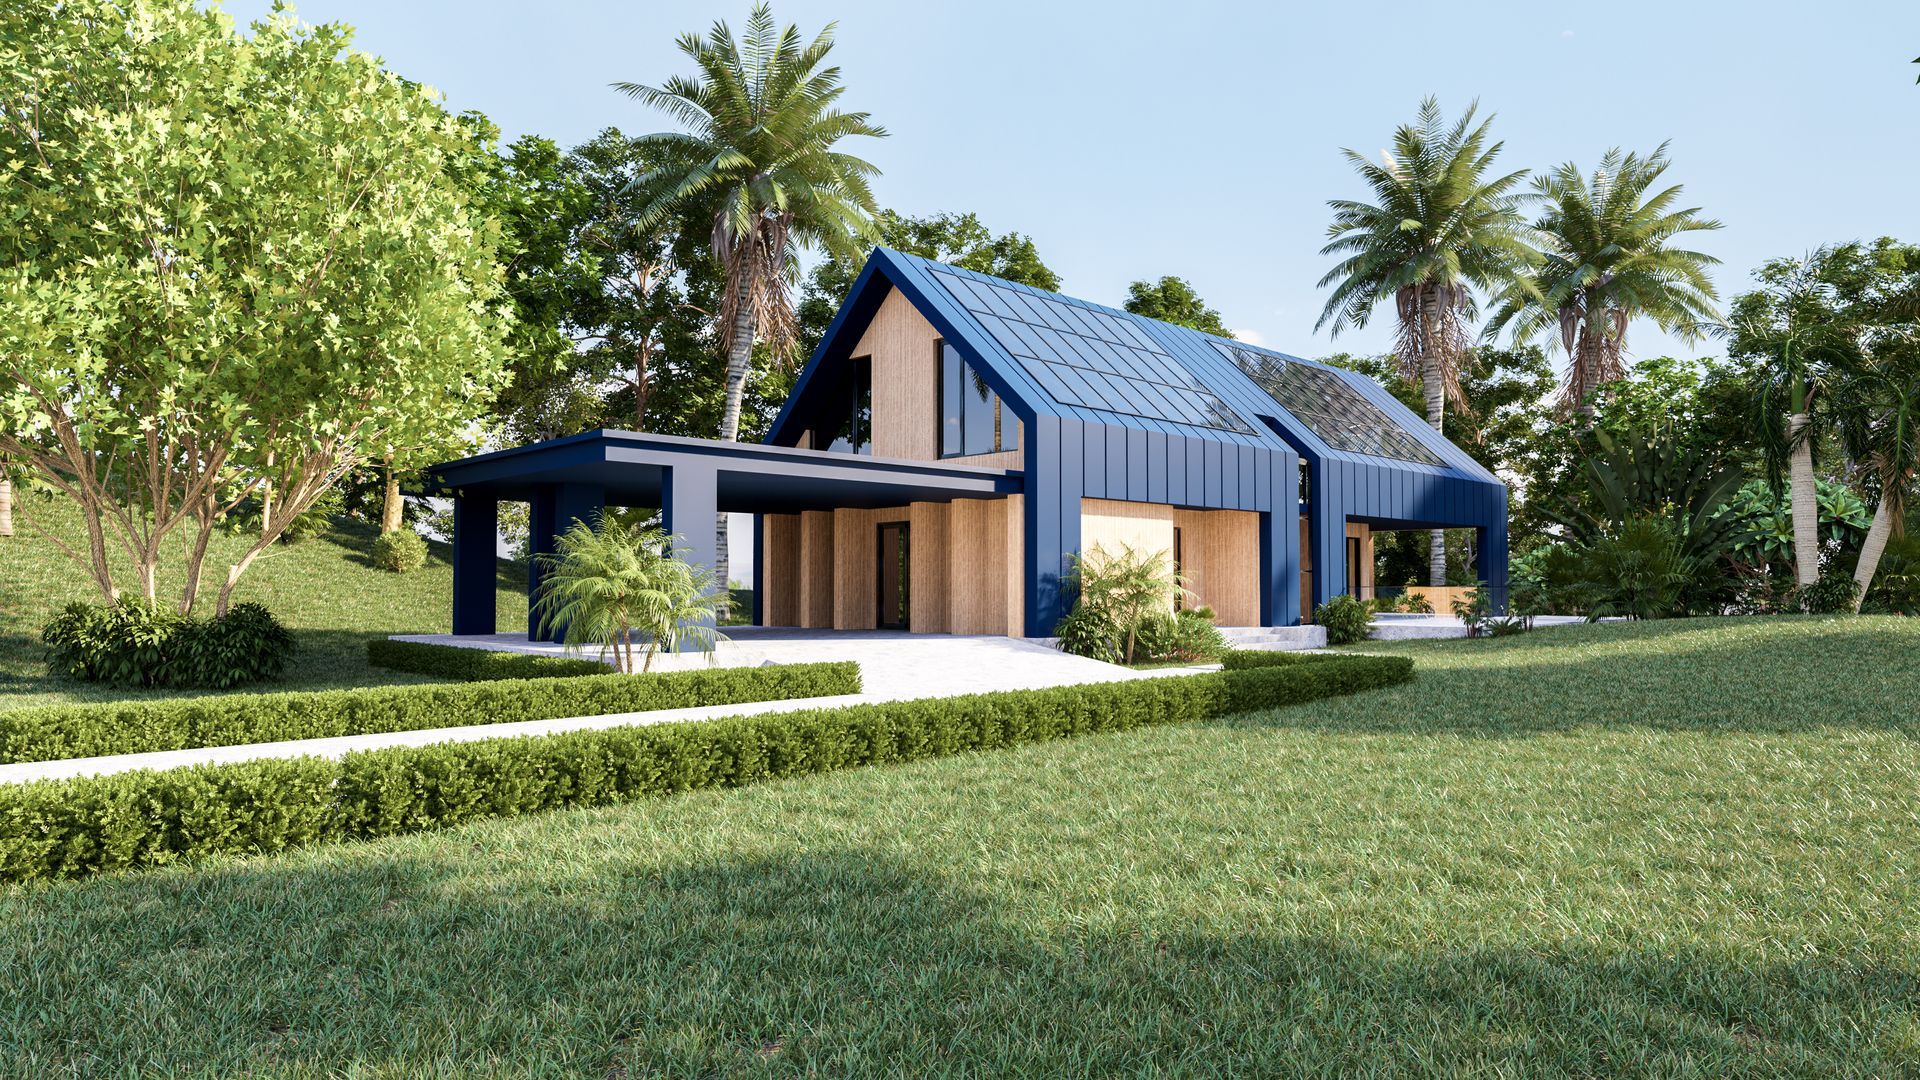 Maison futuriste écologique avec panneaux solaire sur toute la surface du toit